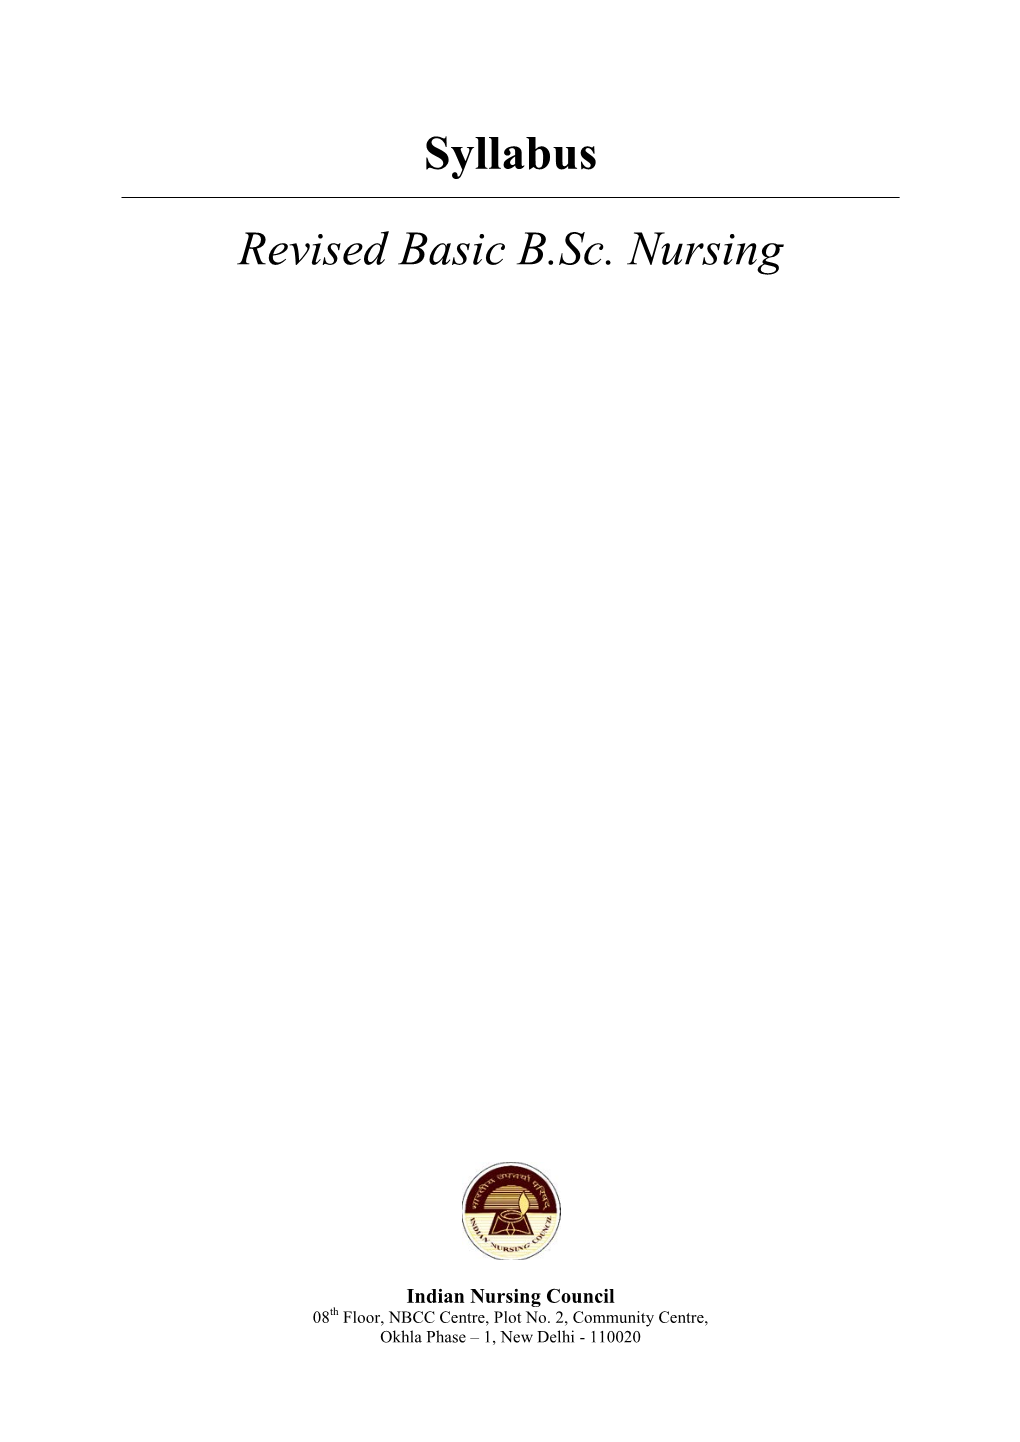 Syllabus Revised Basic B.Sc. Nursing